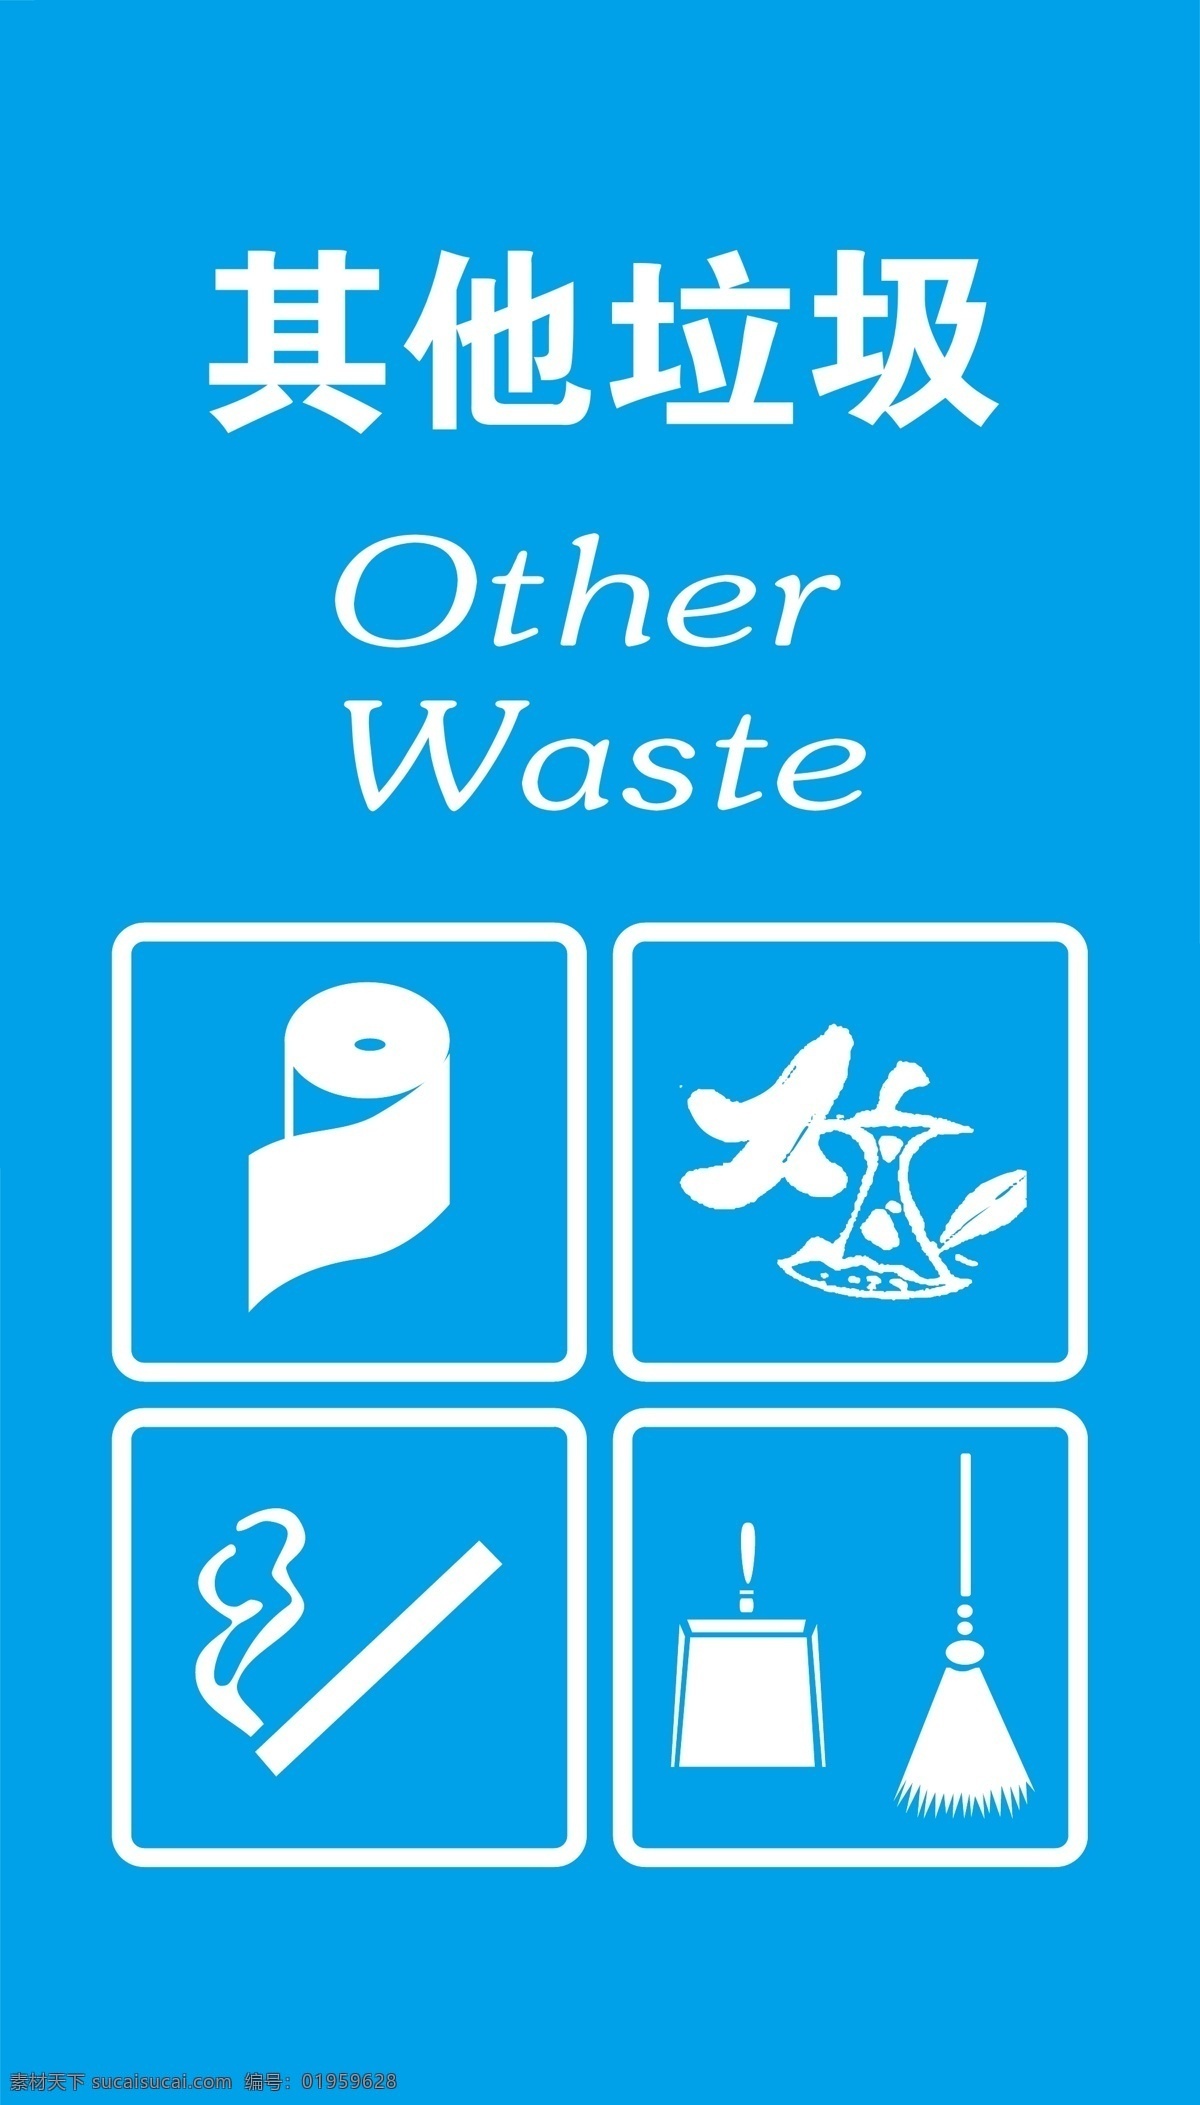 垃圾箱标签 垃圾分类 垃圾箱标识 垃圾箱标志 垃圾桶标签 可回收 不可回收 金属类 塑料类 其他垃圾 招贴设计